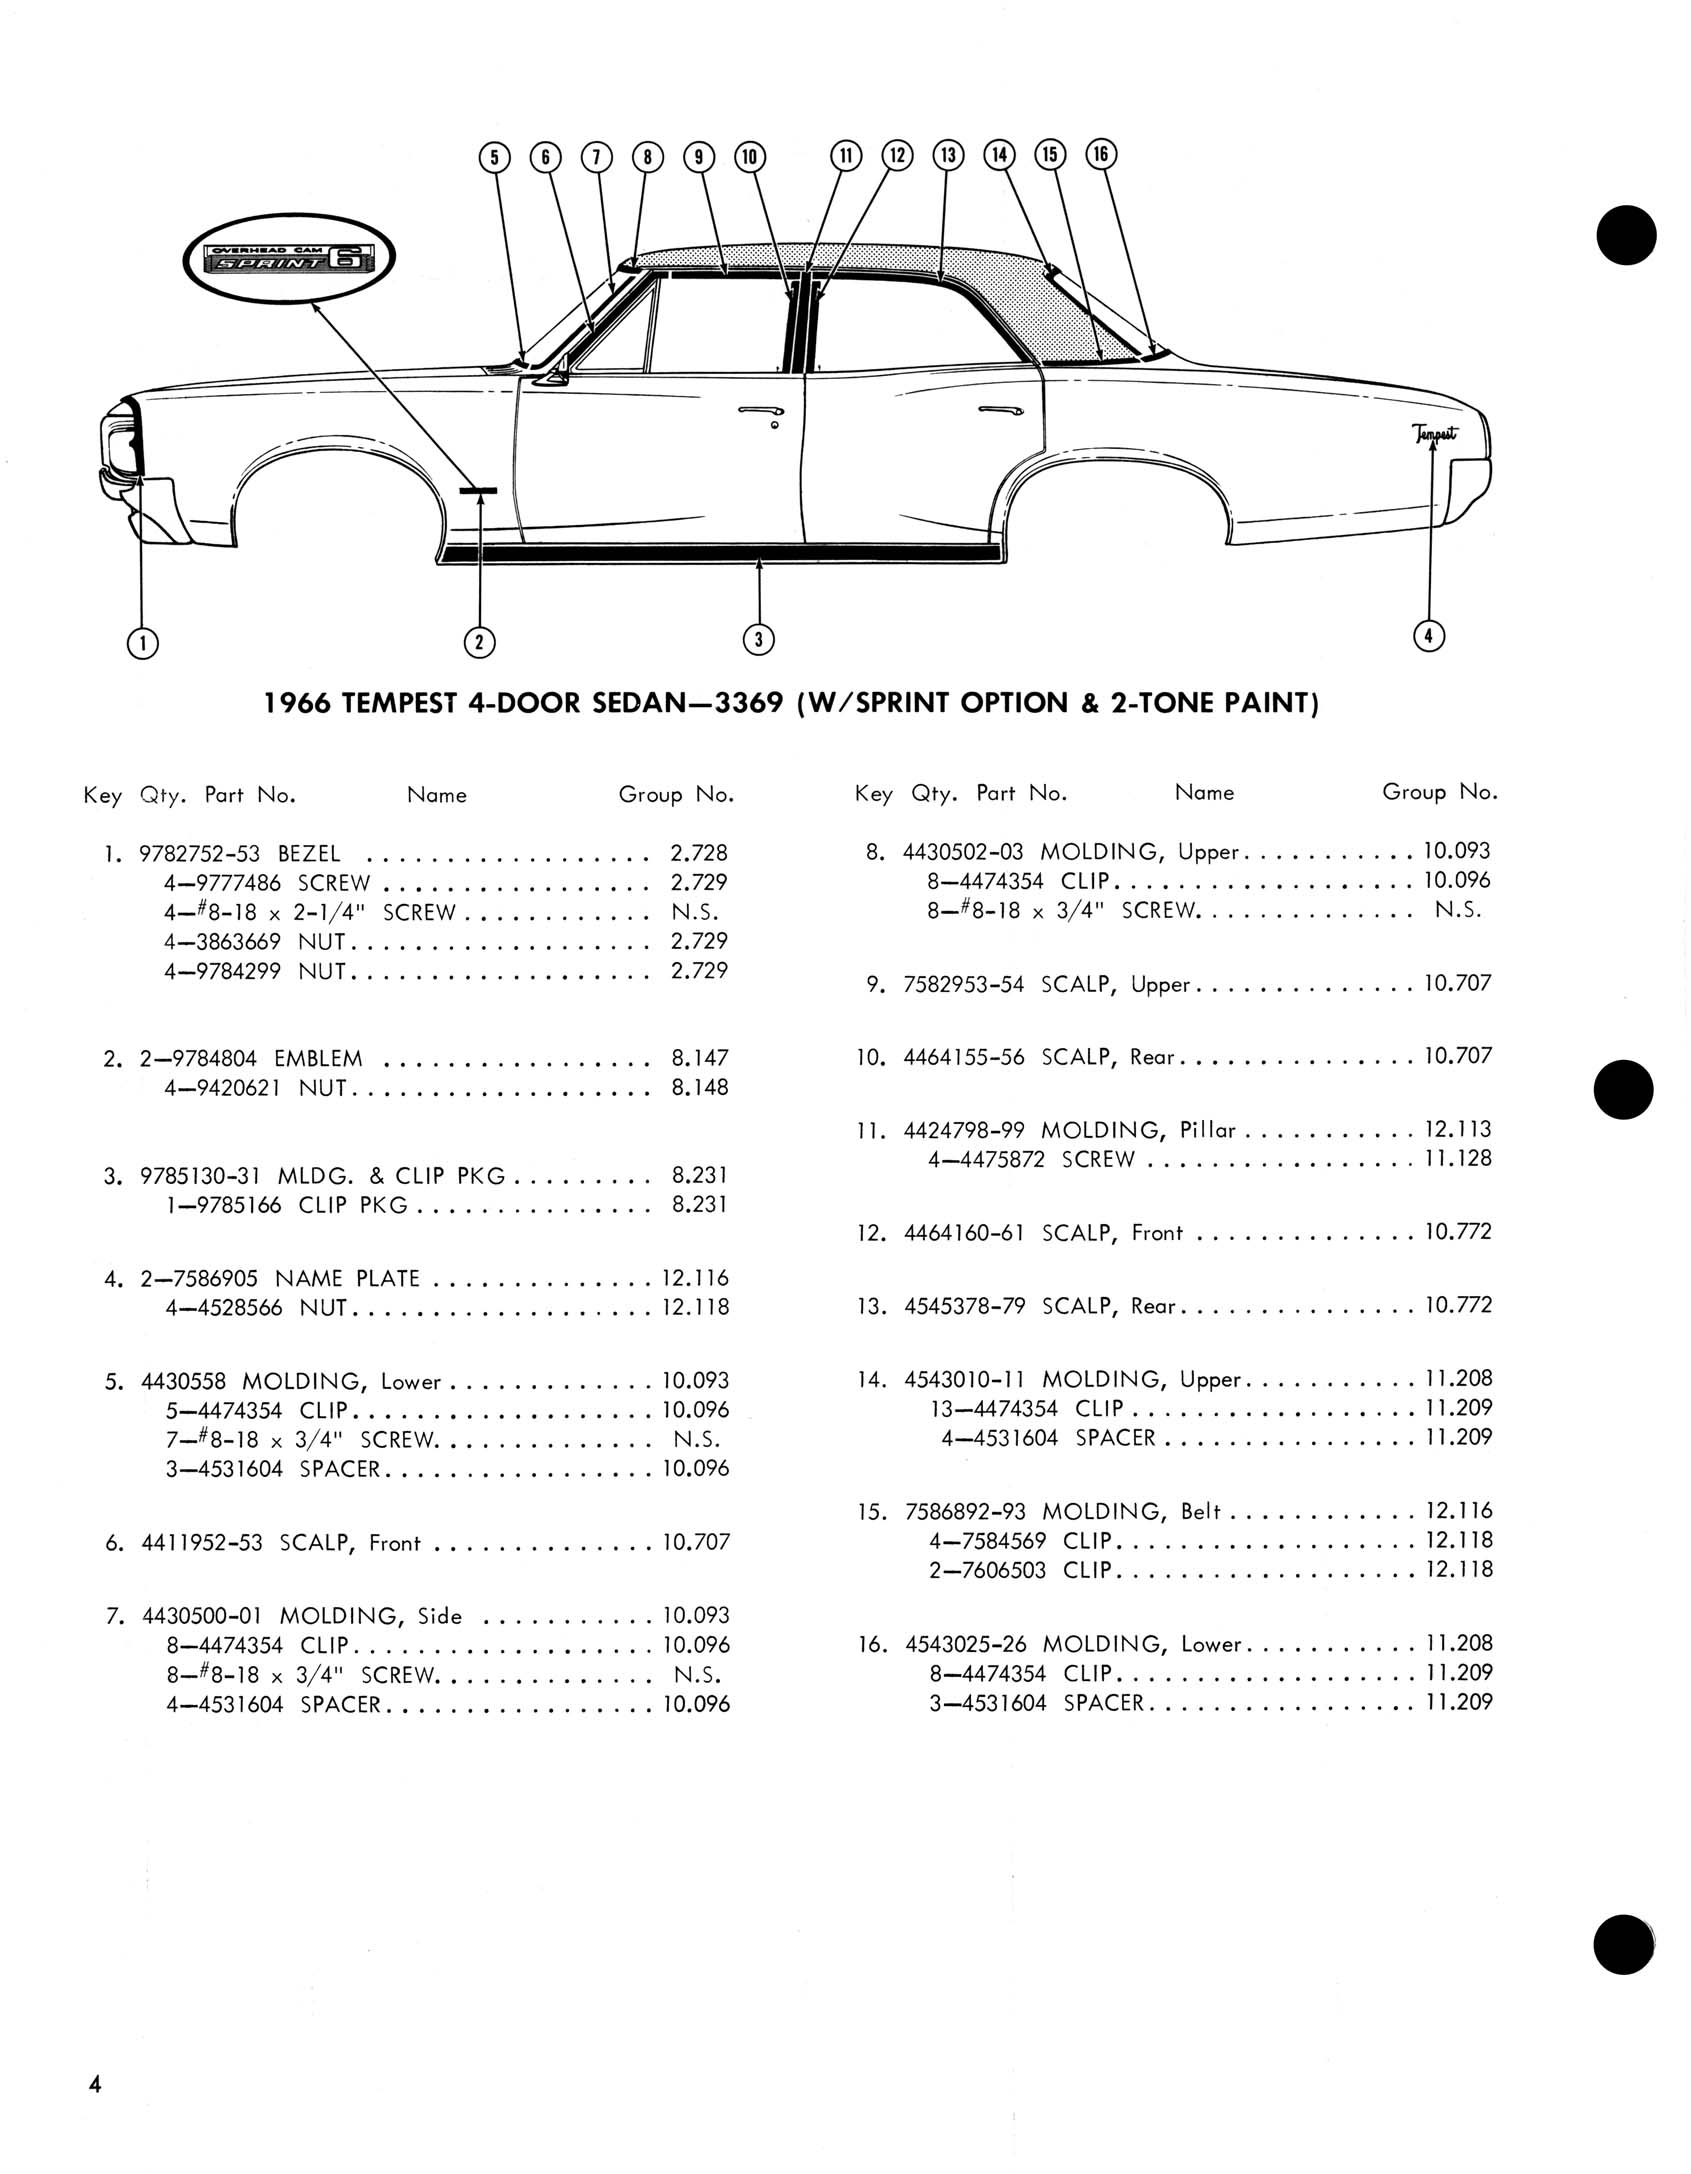 1966_Pontiac_Molding_and_Clip_Catalog-04